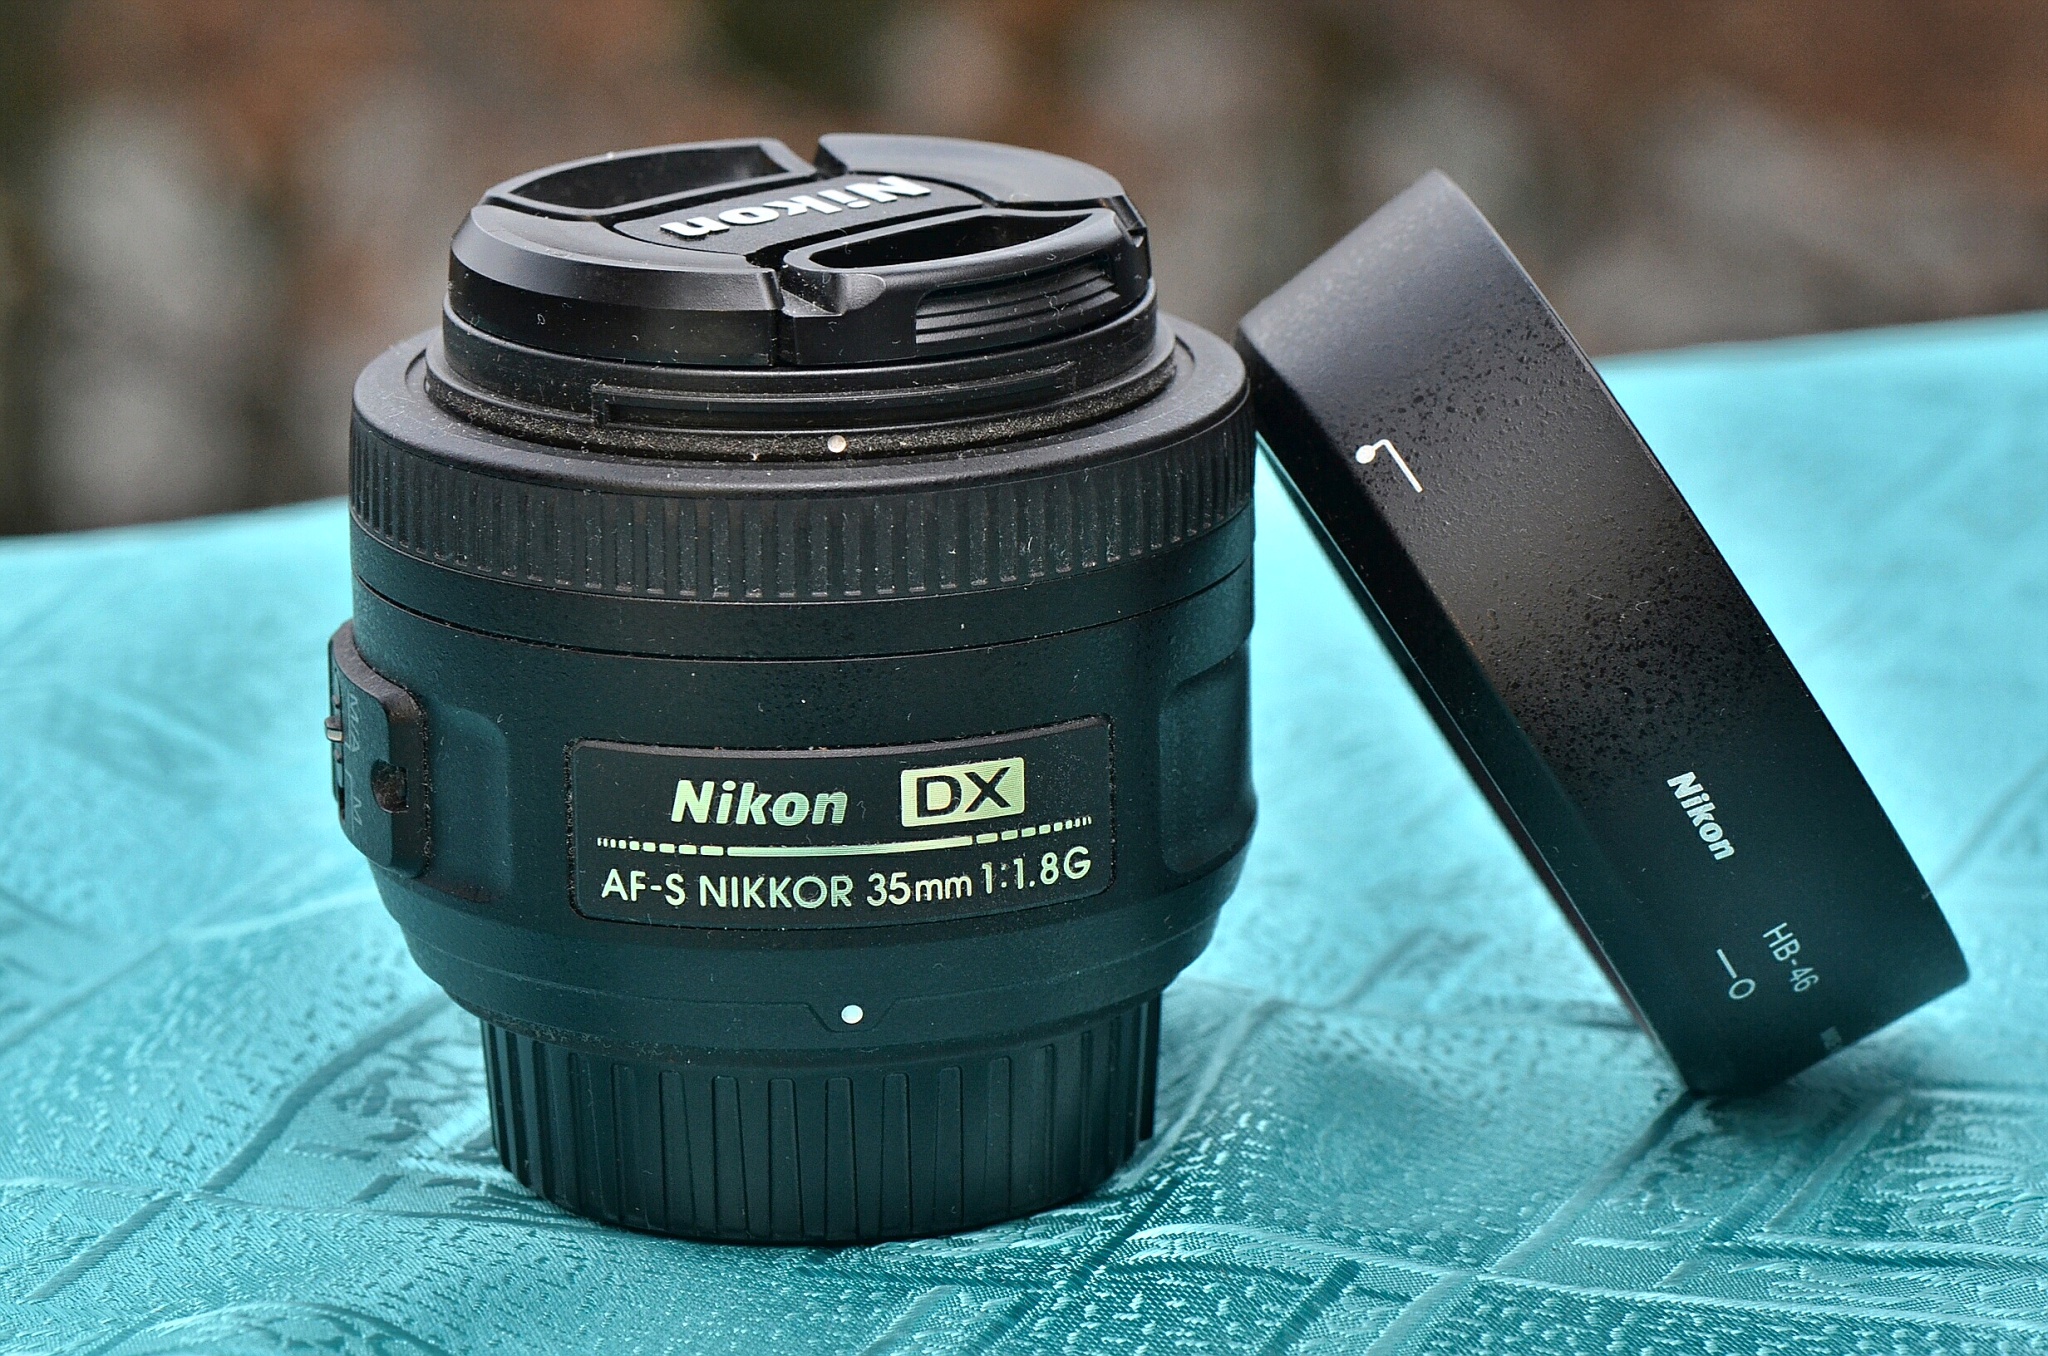 Nikon nikkor 35mm f 1.8 g. Nikon 35mm f/1.8g af-s DX Nikkor. Nikon DX af-s Nikkor 35mm 1 1.8g. Nikon 35mm f/1.8g. Af-s DX Nikkor 35mm f/1.8g.